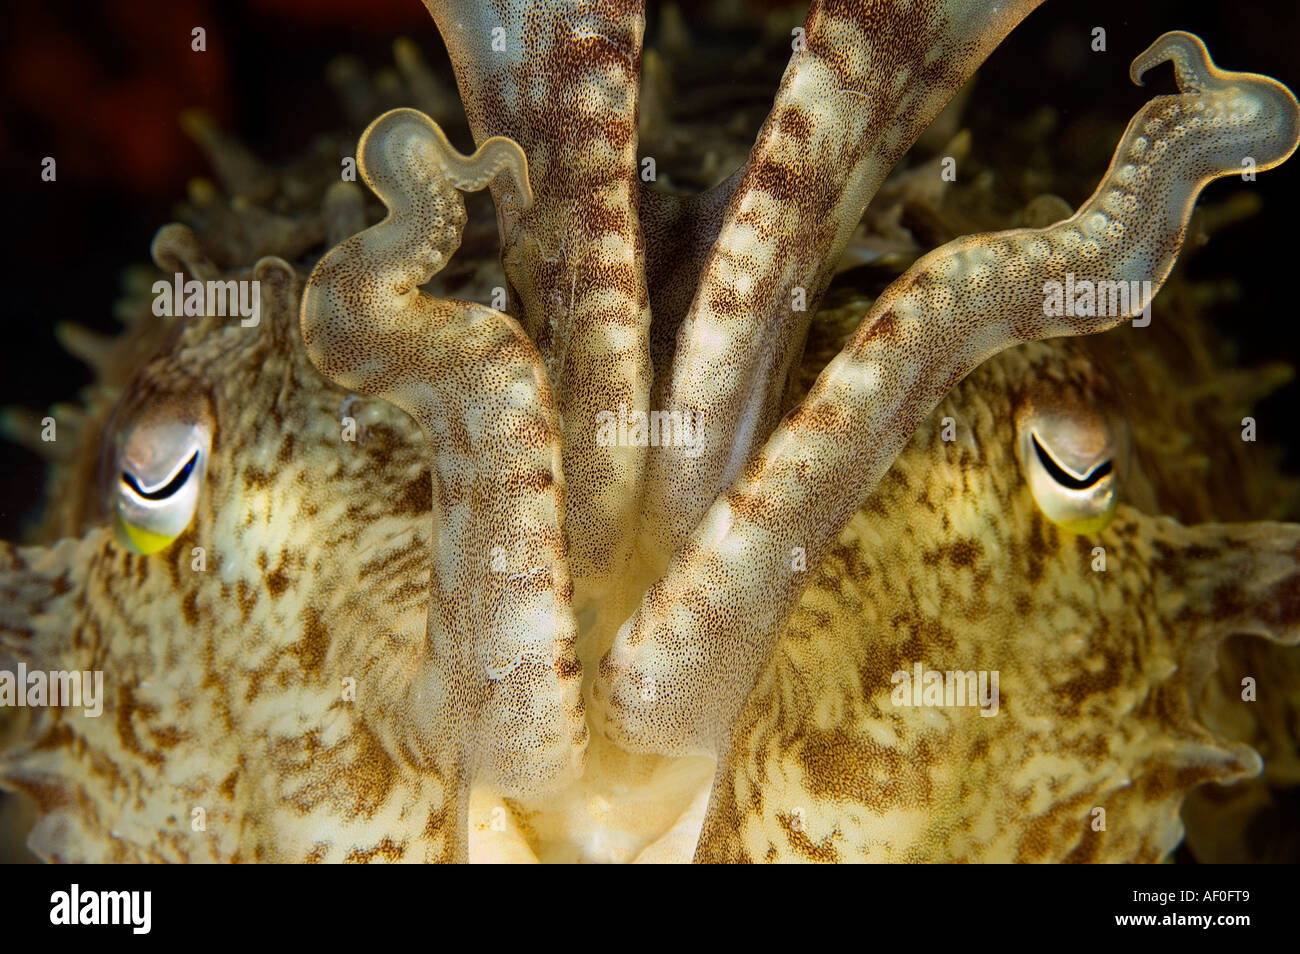 Cuttlefish, Sepia latimanus, face details, Bali Indonesia. Stock Photo